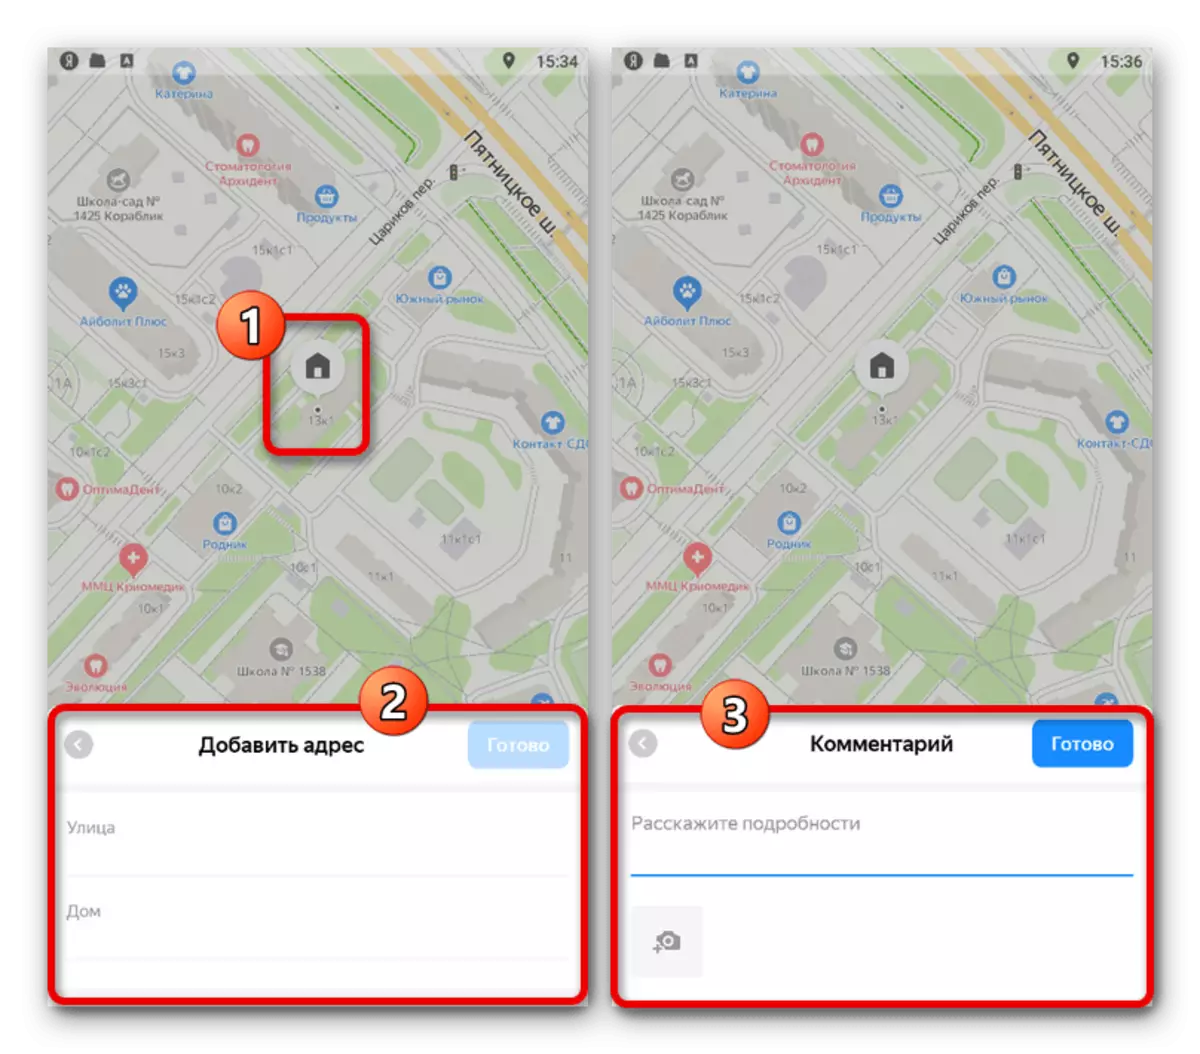 Pridanie podrobností o objekte v aplikácii Yandex.Maps